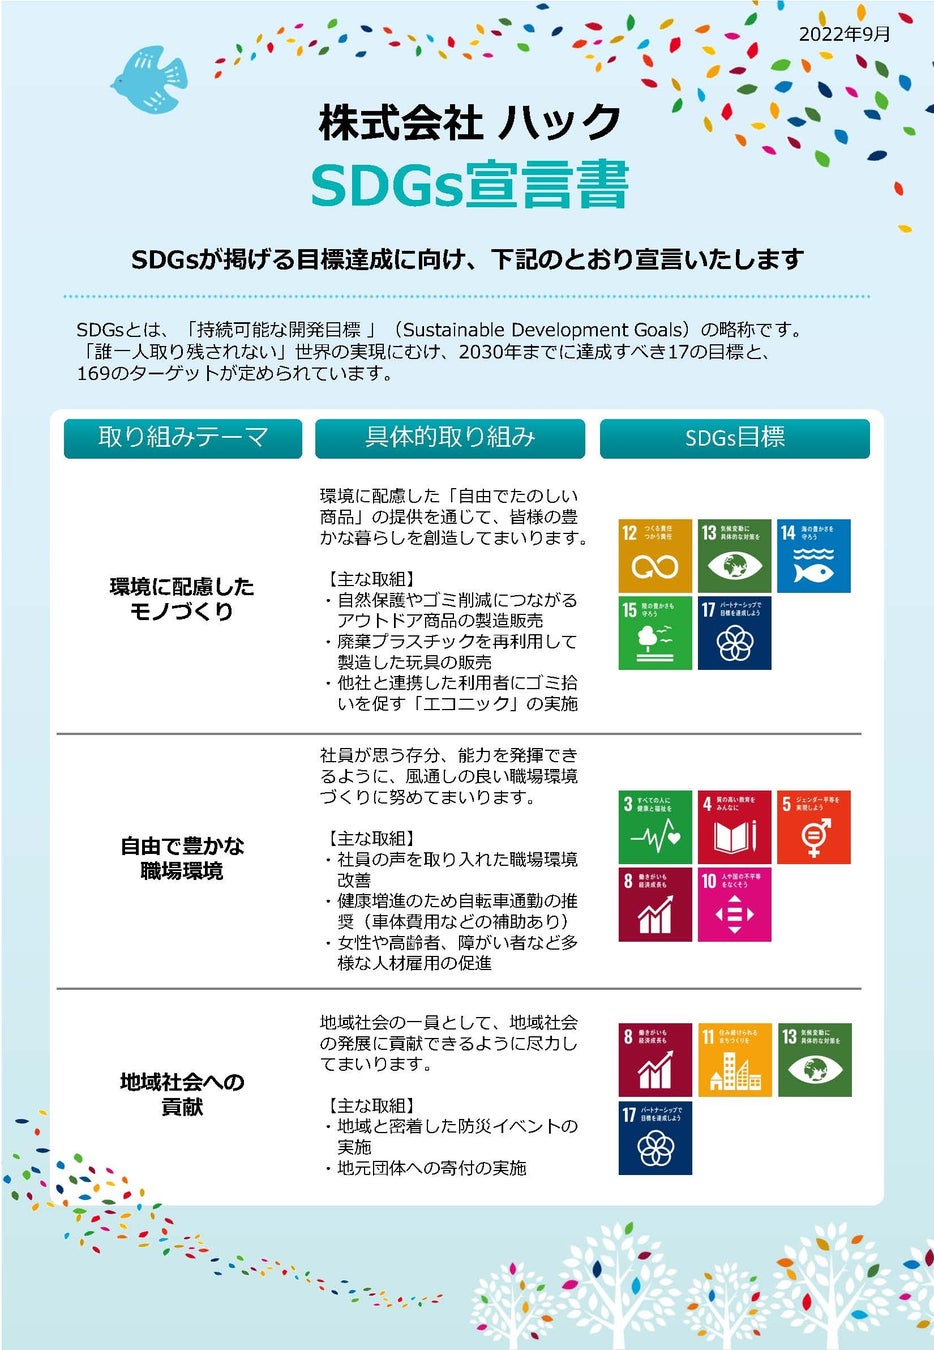 【SDGs宣言】「環境に配慮したモノづくり」と「地域社会への貢献」「自由で豊かな職場環境」を目指してのサブ画像2